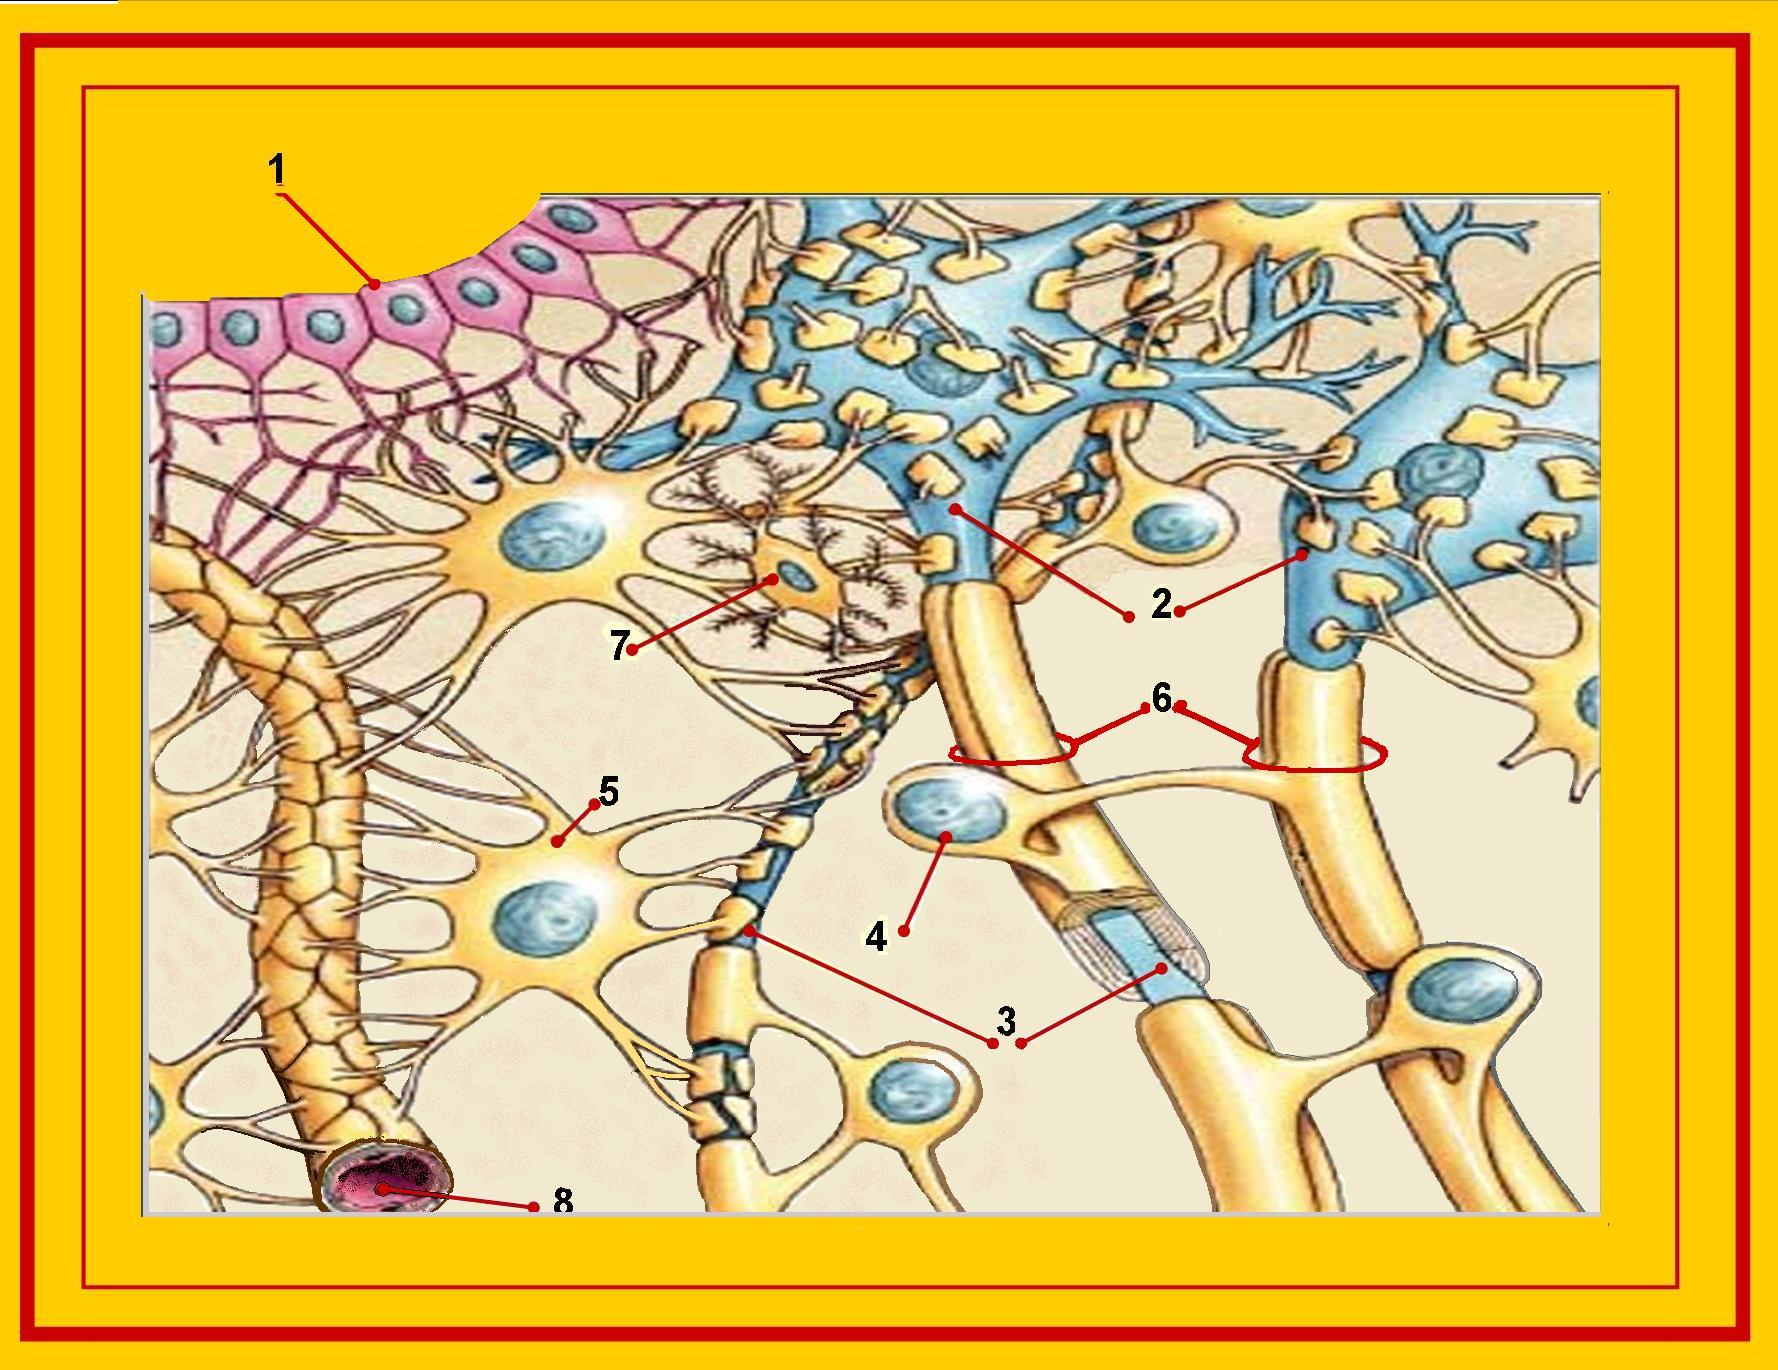 Νευρώνες και γλοιακά κύτταρα (9/9) 1. Ependymal cells 2. Neurons 3. Axon 4.